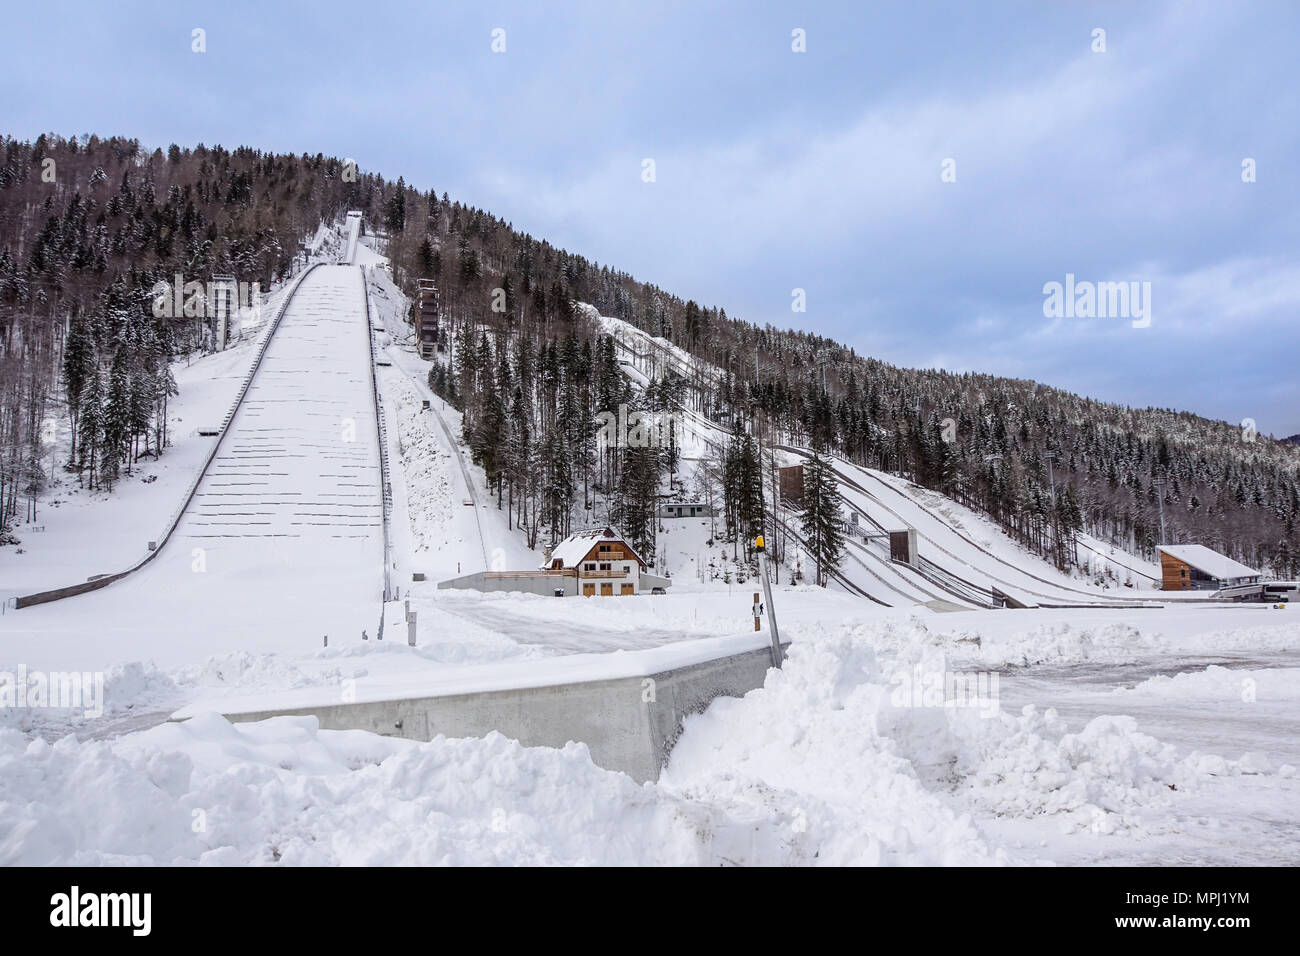 Planica, Slowenien - 18. Oktober 2017 - Der Bau von Planica Nordic Center mit Schanzen. Planica ist berühmt Skispringen Veranstaltungsort mit fliegenden Hügel von Gori ek Brüder. Stockfoto